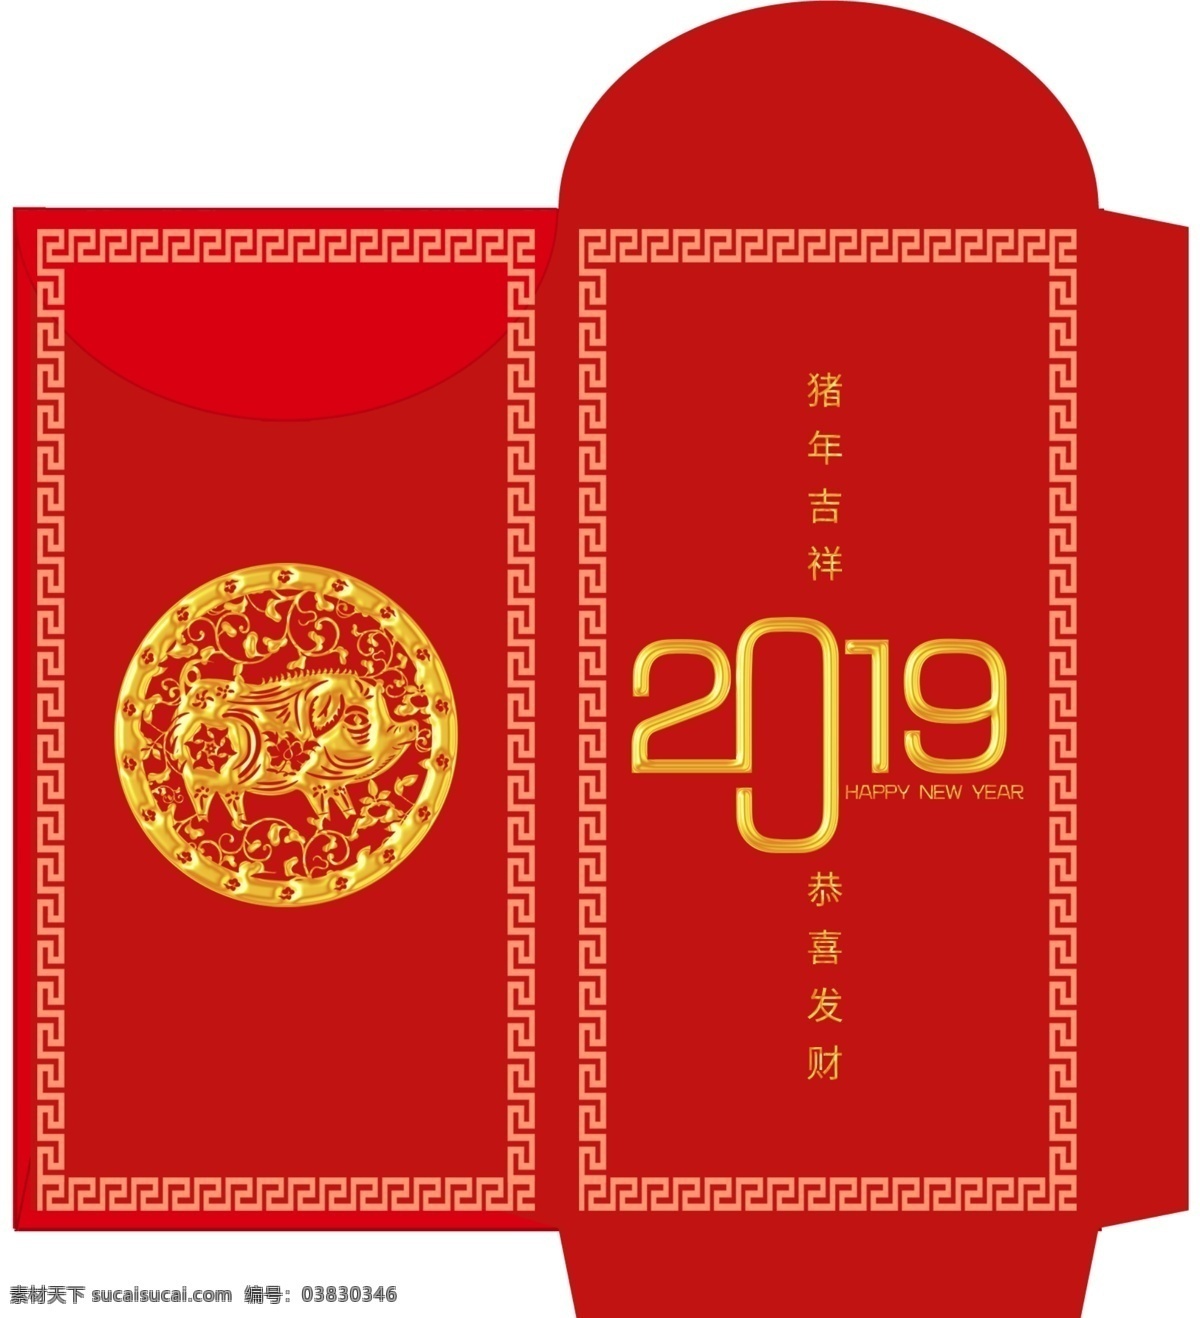 创意 时尚 卡通 2019 猪年 红包 模板 psd素材 创意设计 免费素材 平面素材 平面模板 卡通猪 红包设计 卡通设计 卡通红包 红包模板